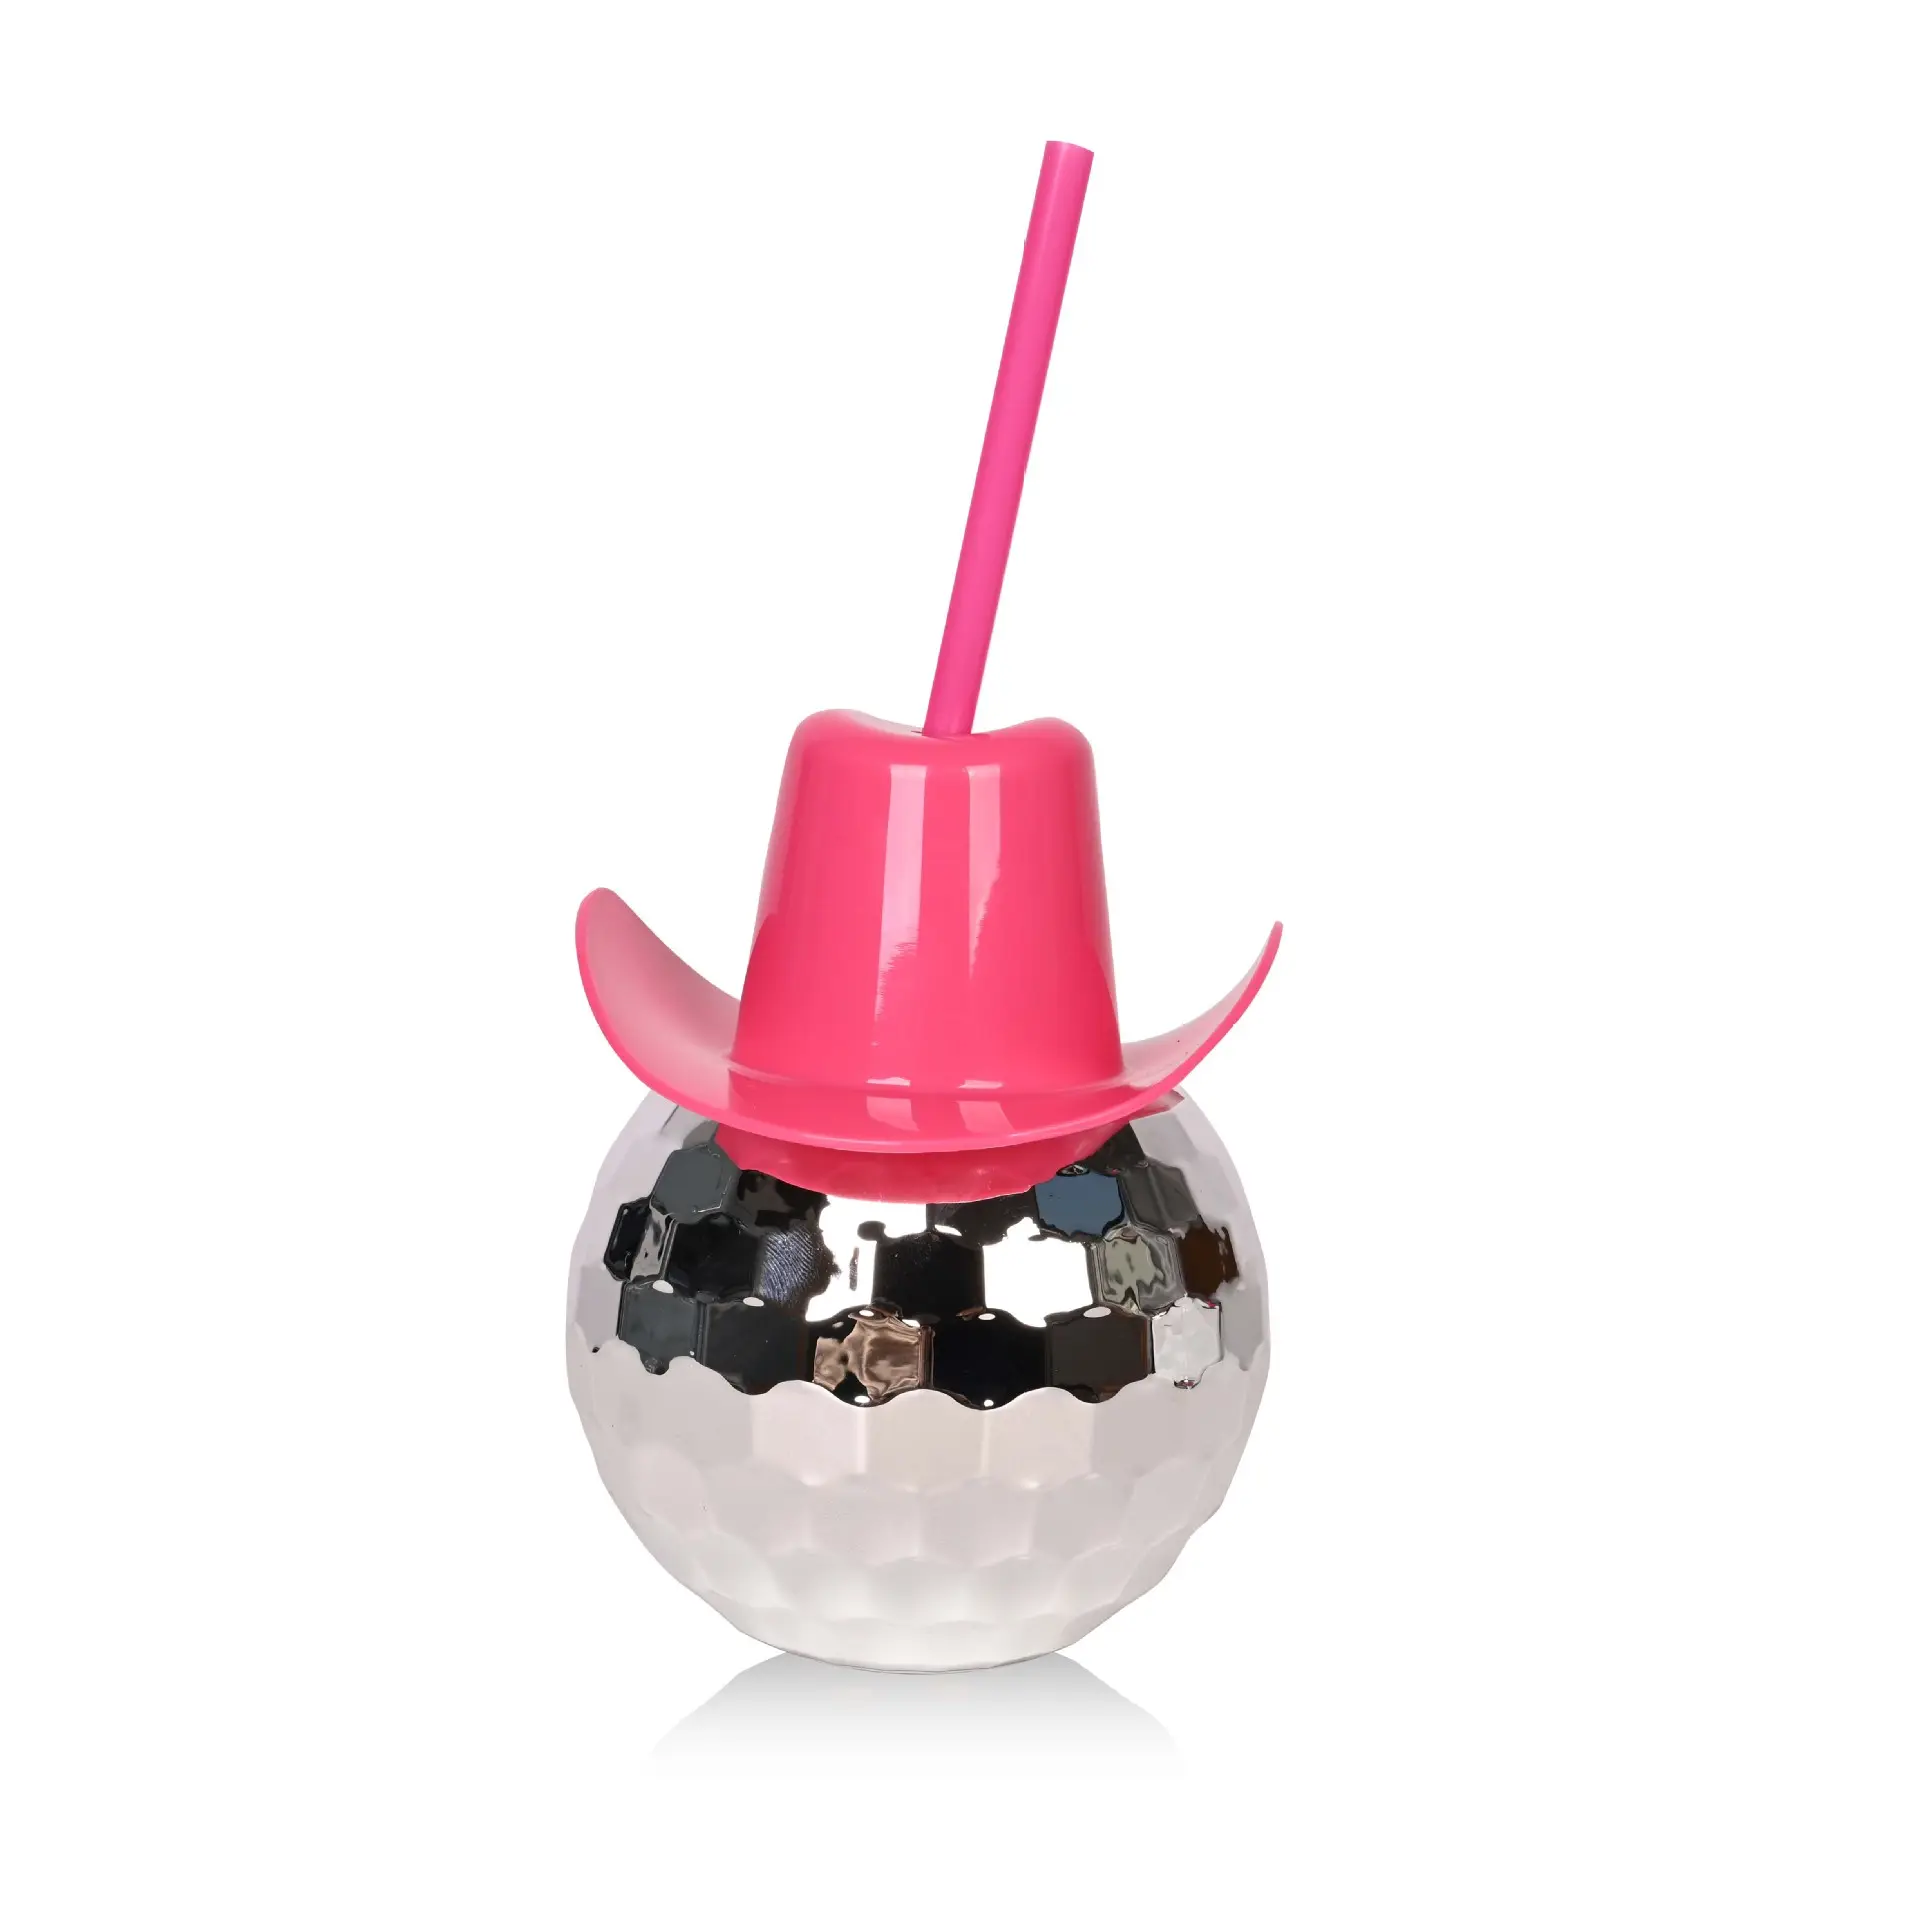 ใหม่สีชมพูคาวเกิร์ลหมวกดิสโก้บอลถ้วยElectroplated Glitter Ball Cupของขวัญปาร์ตี้สีชมพูคาวบอยหมวกดิสโก้บาร์ถ้วย